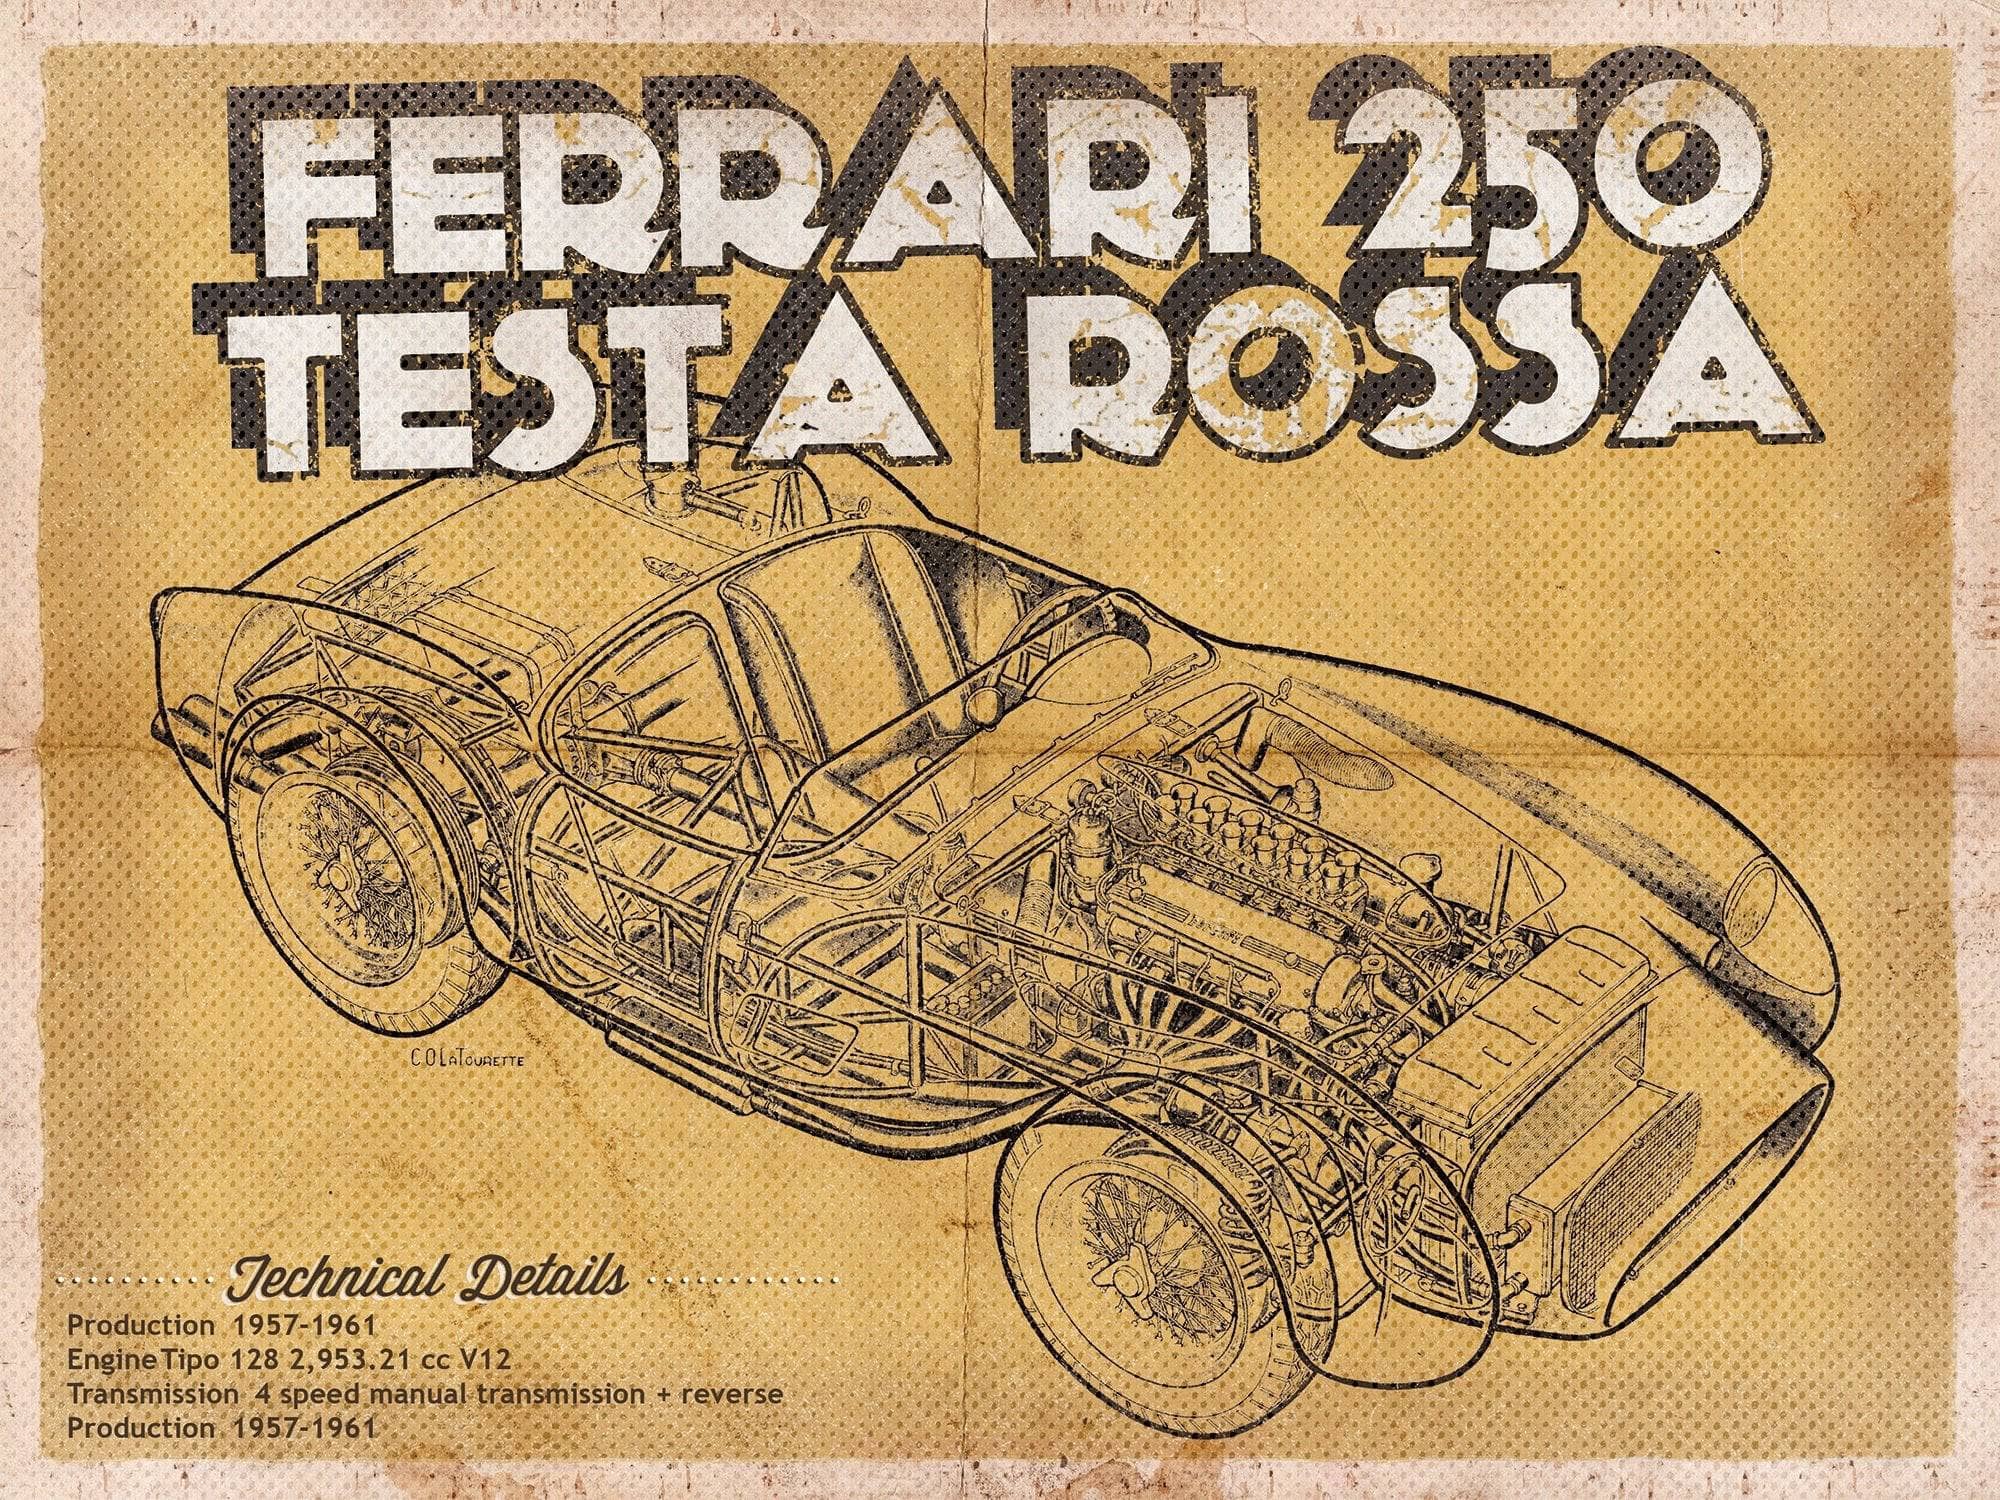 Cutler West Ferrari Collection 14" x 11" / Unframed Ferrari 250 Testa Rossa Racing Sports Car Print 701672088_61805